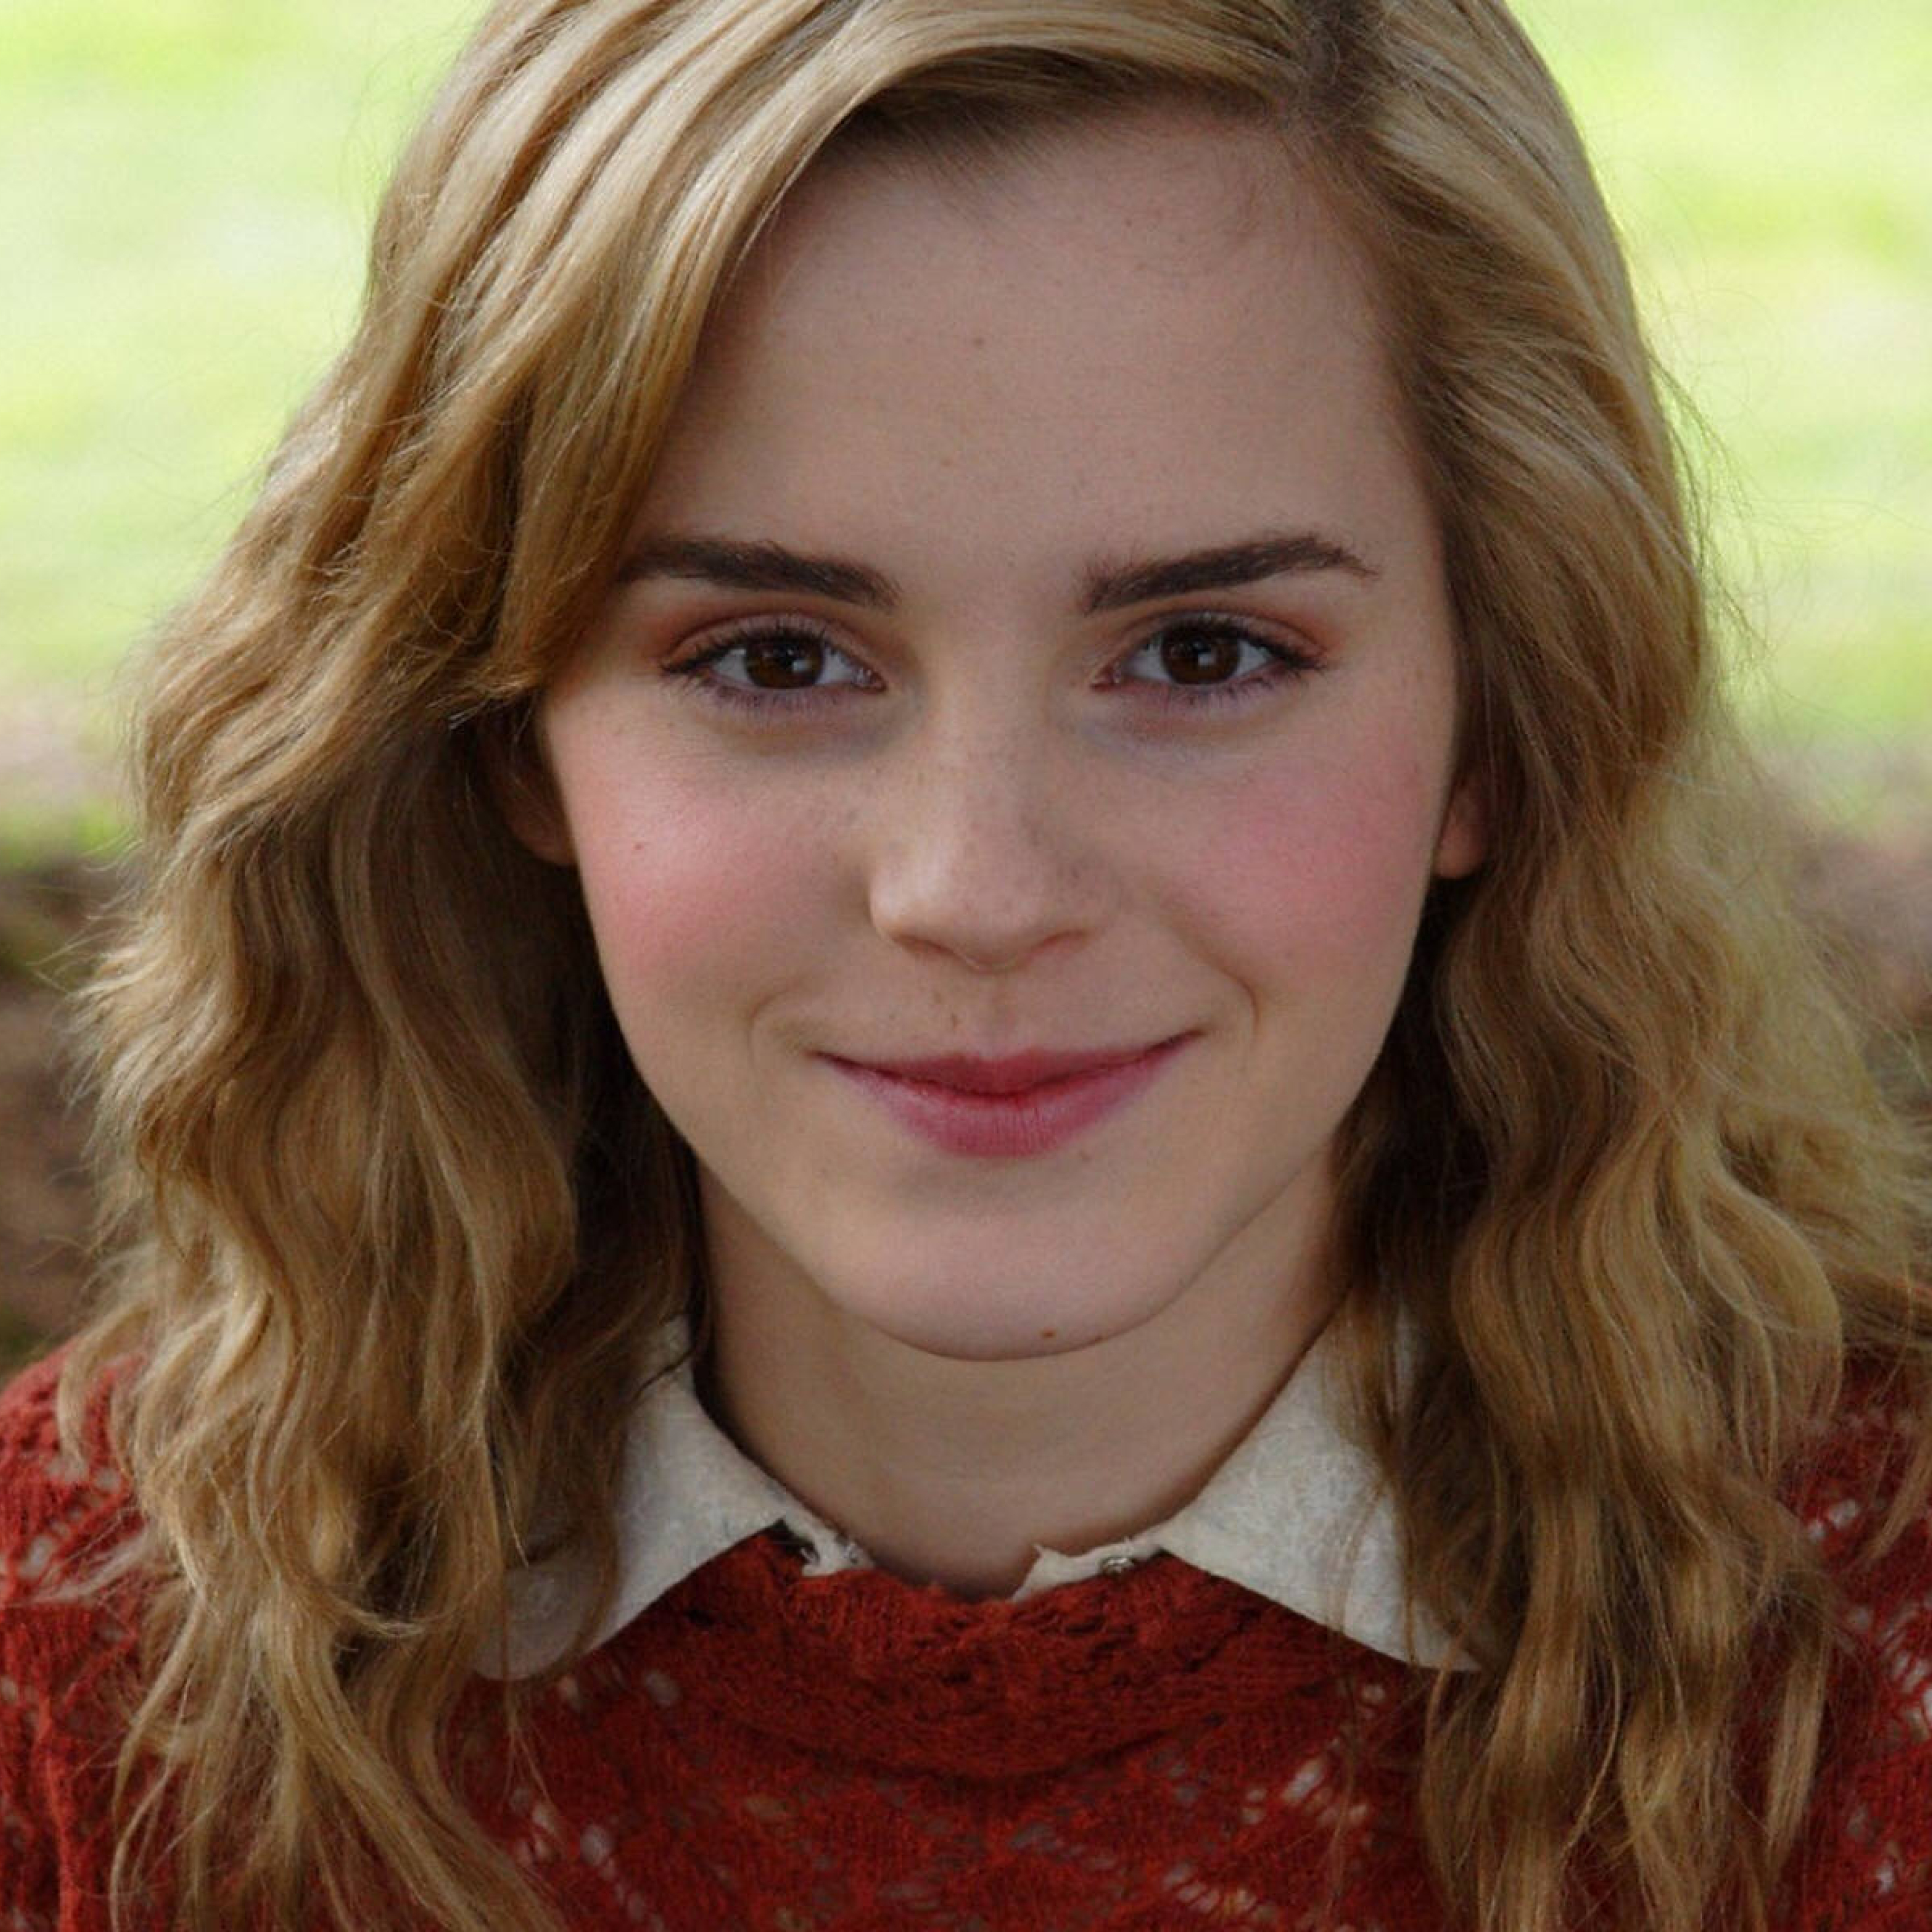 Emma Watson Smile Red Look, Full HD Wallpaper